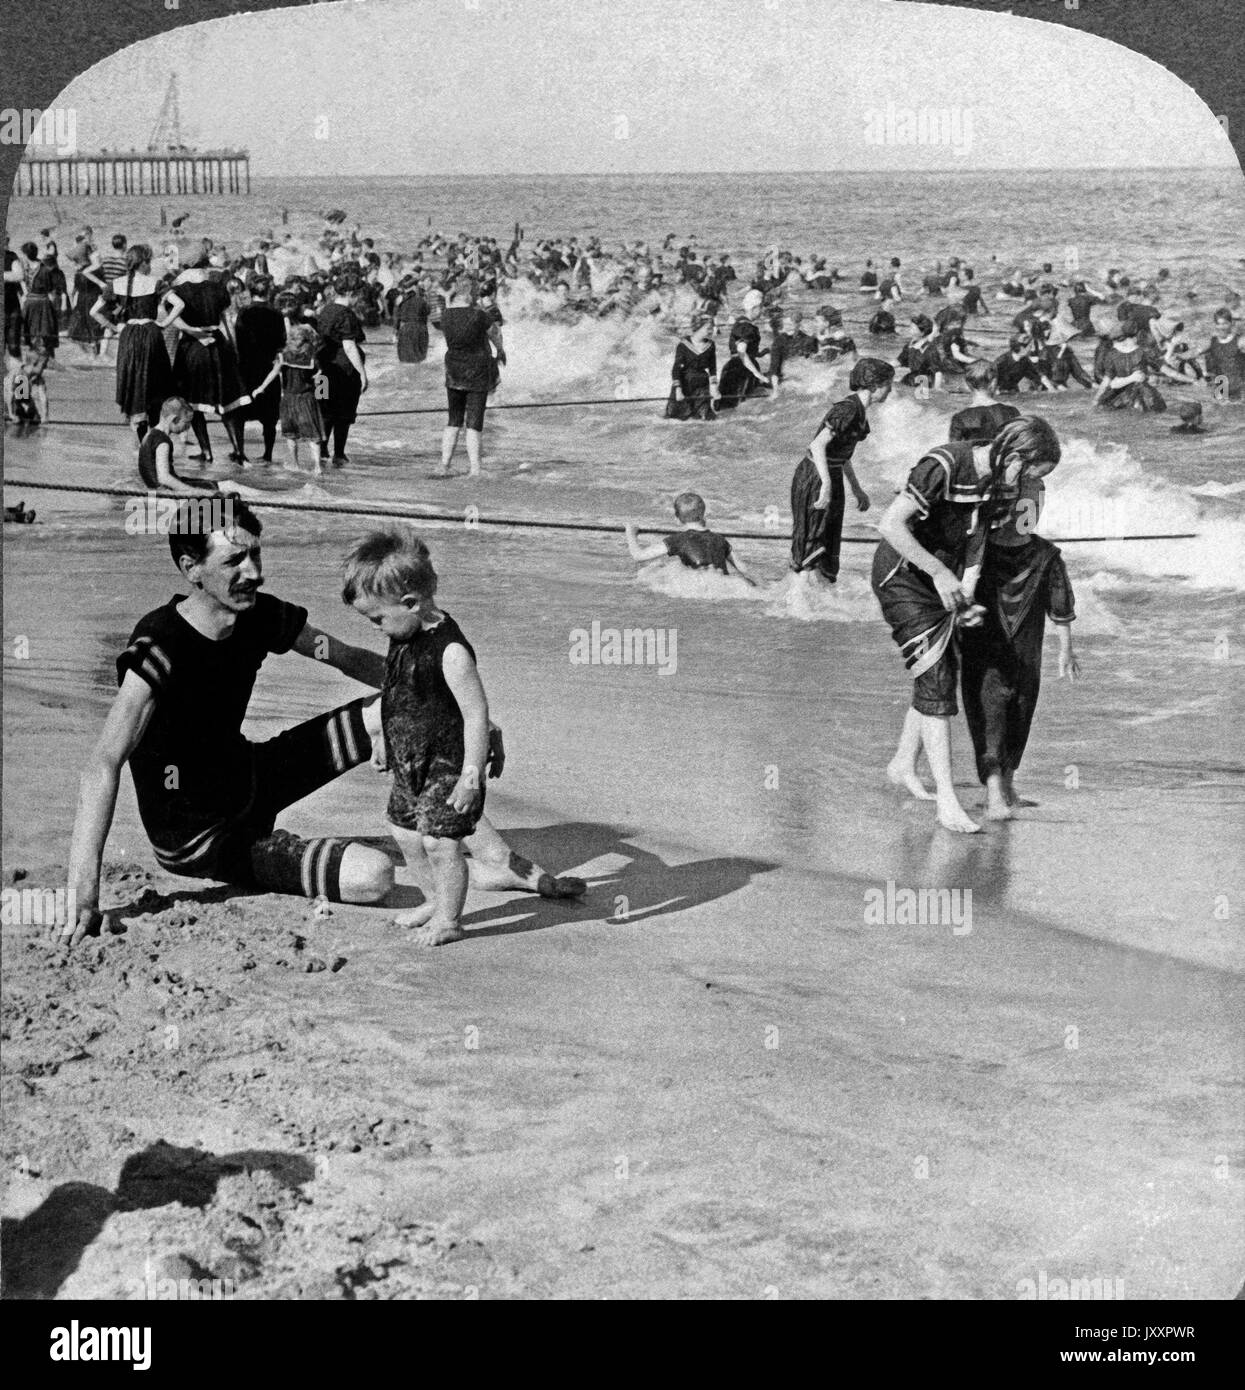 Neptuns Lächeln - am Strand von Asbury Park, New Jersey, USA 1901. Le Sourire de Neptune - vieux disjoncteurs fringant ludique de l'océan sur la plage de Asbury Park., N.J., USA 1901 Banque D'Images